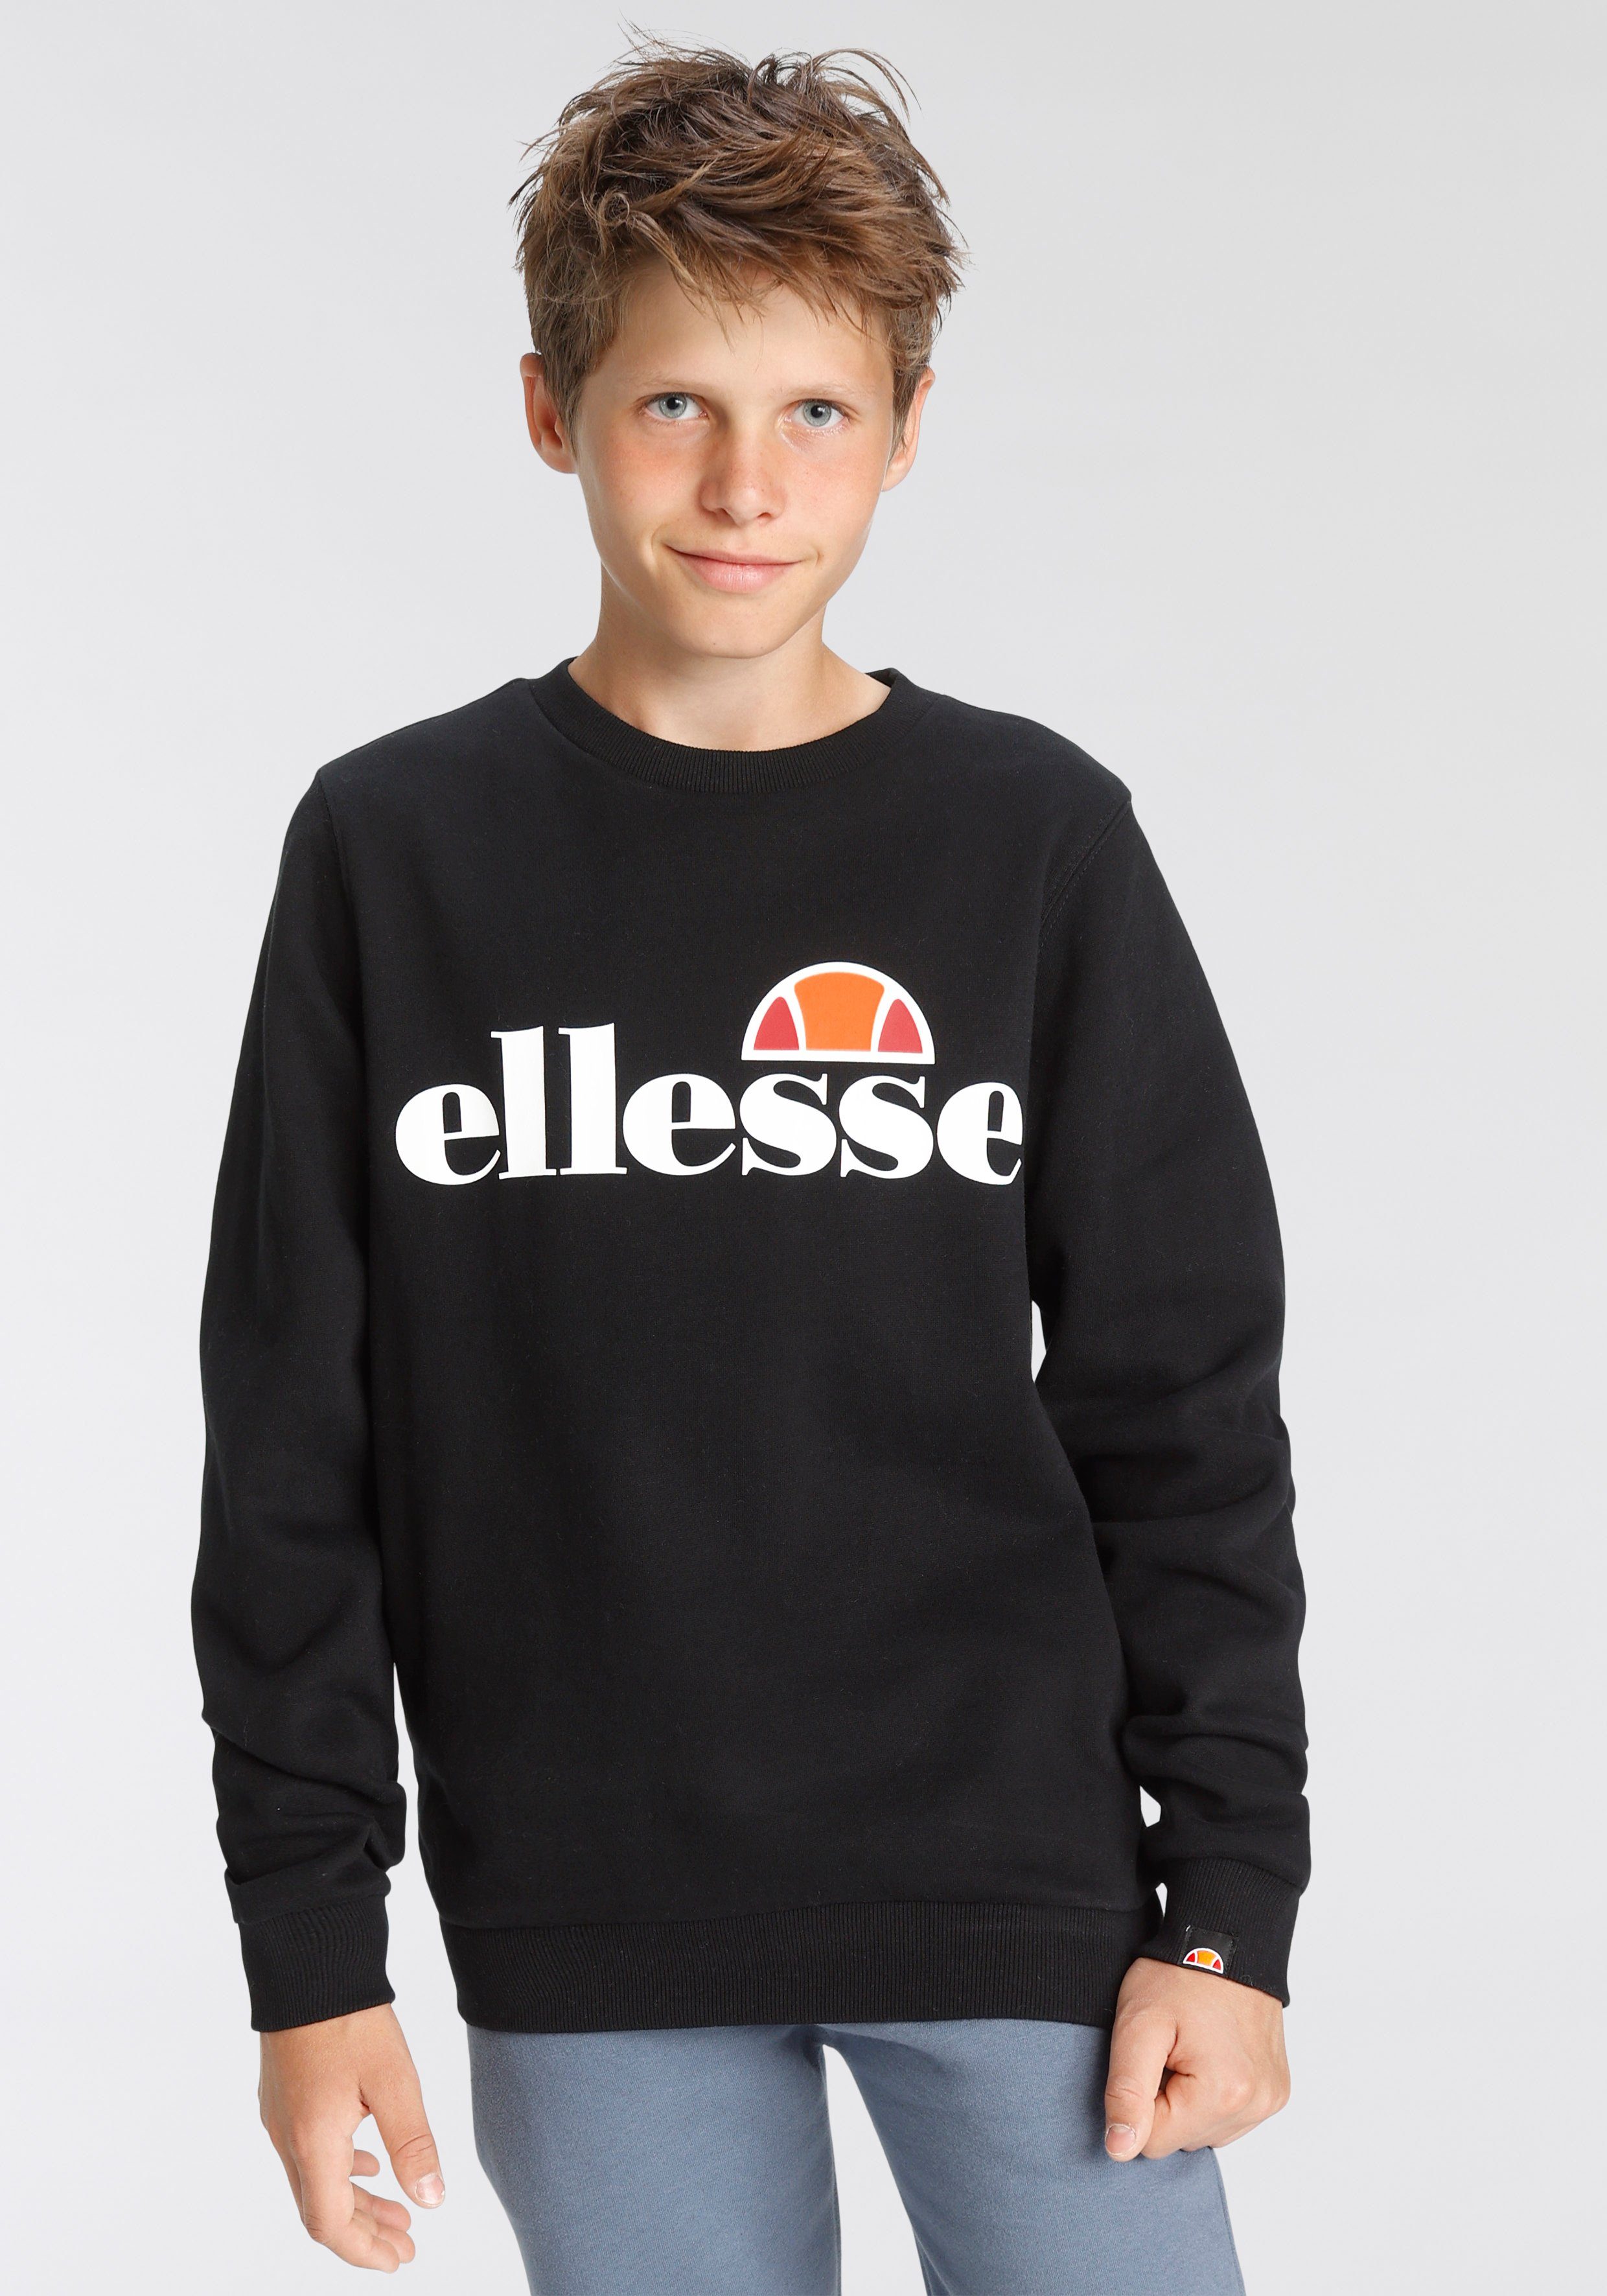 Ellesse Sweatshirt für Kinder black | Sweatshirts